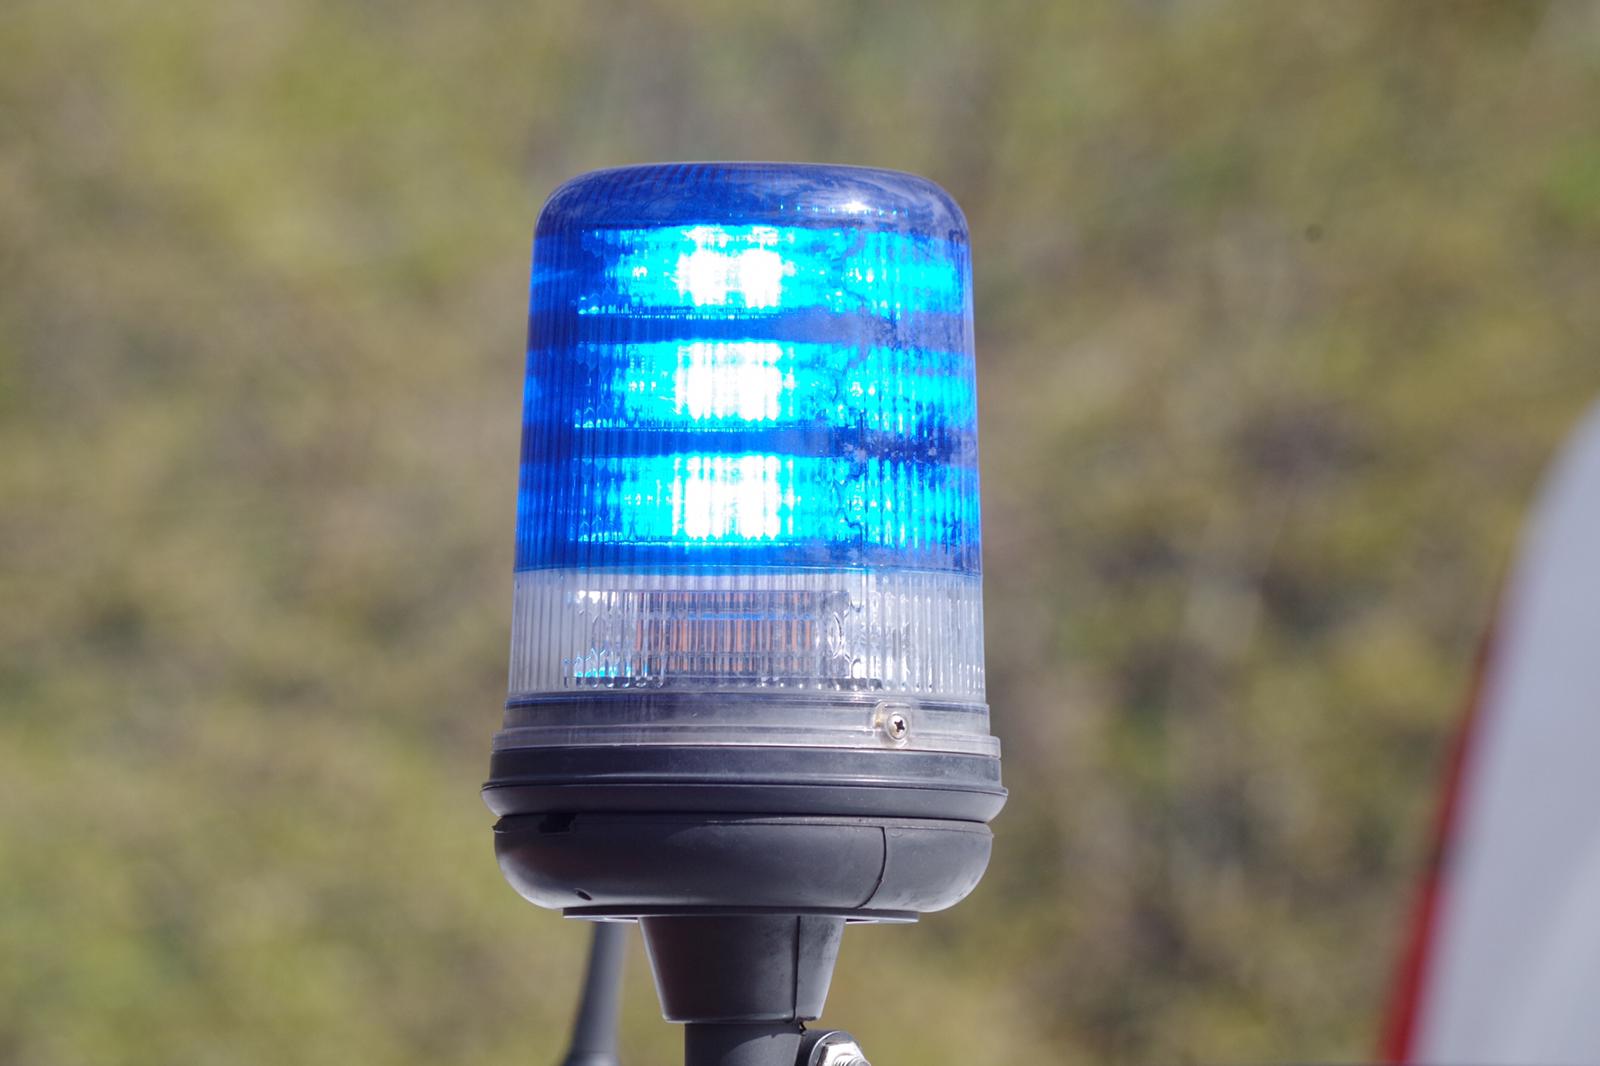 Roosendaal - Vuurwerkbom tegen woning, politie zoekt getuigen